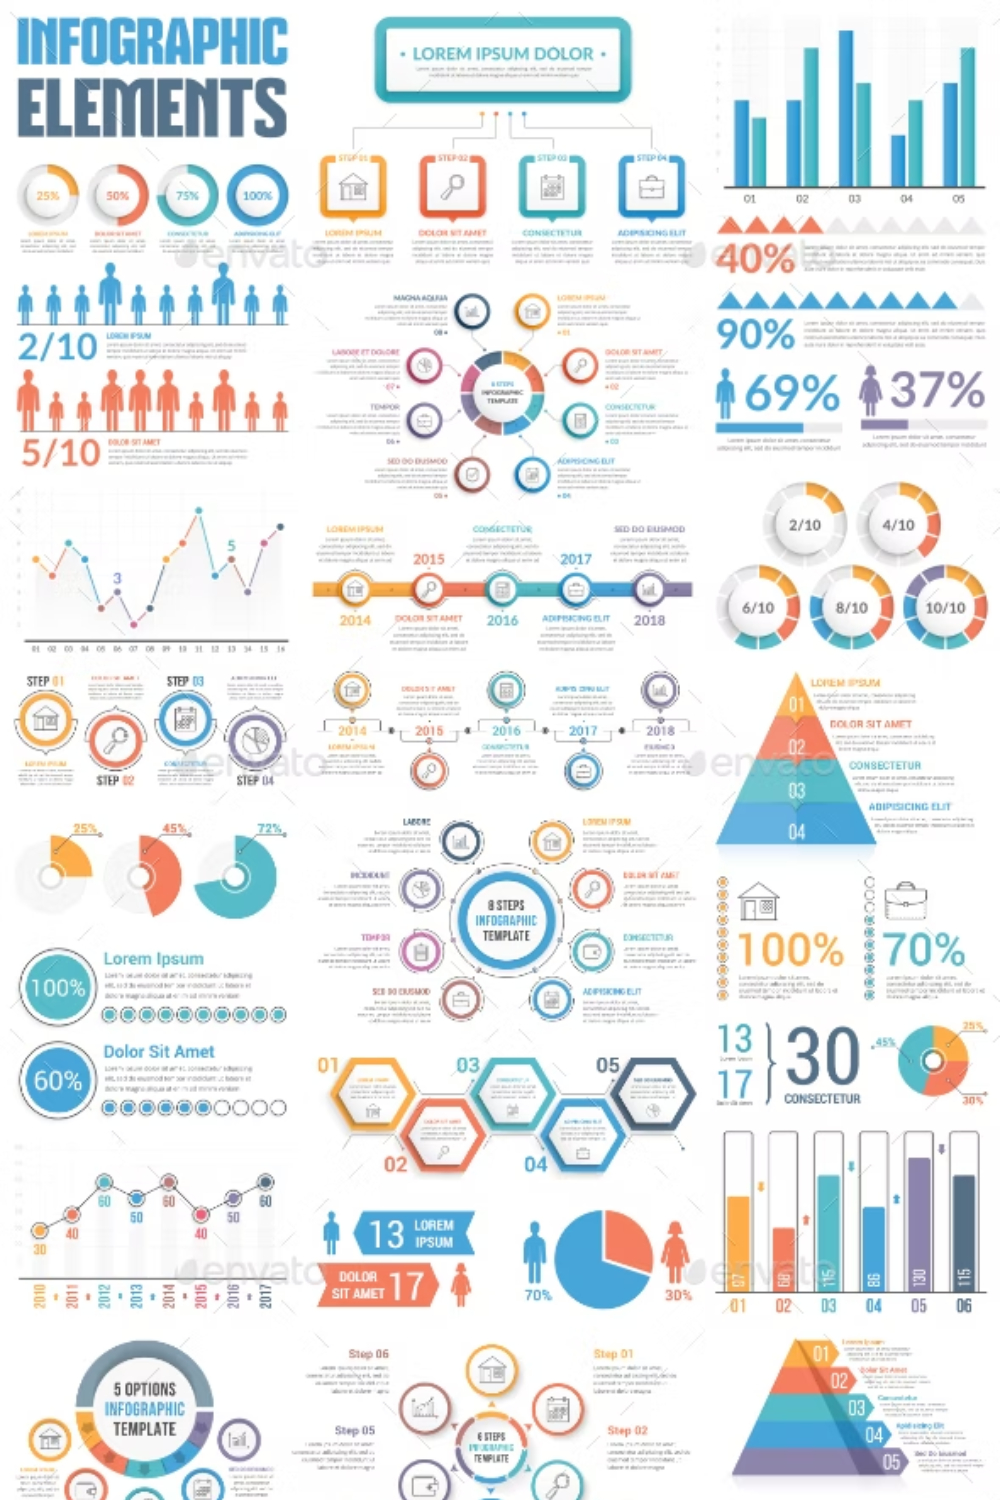 Infographic Elements Bundle Pinterest Cover.